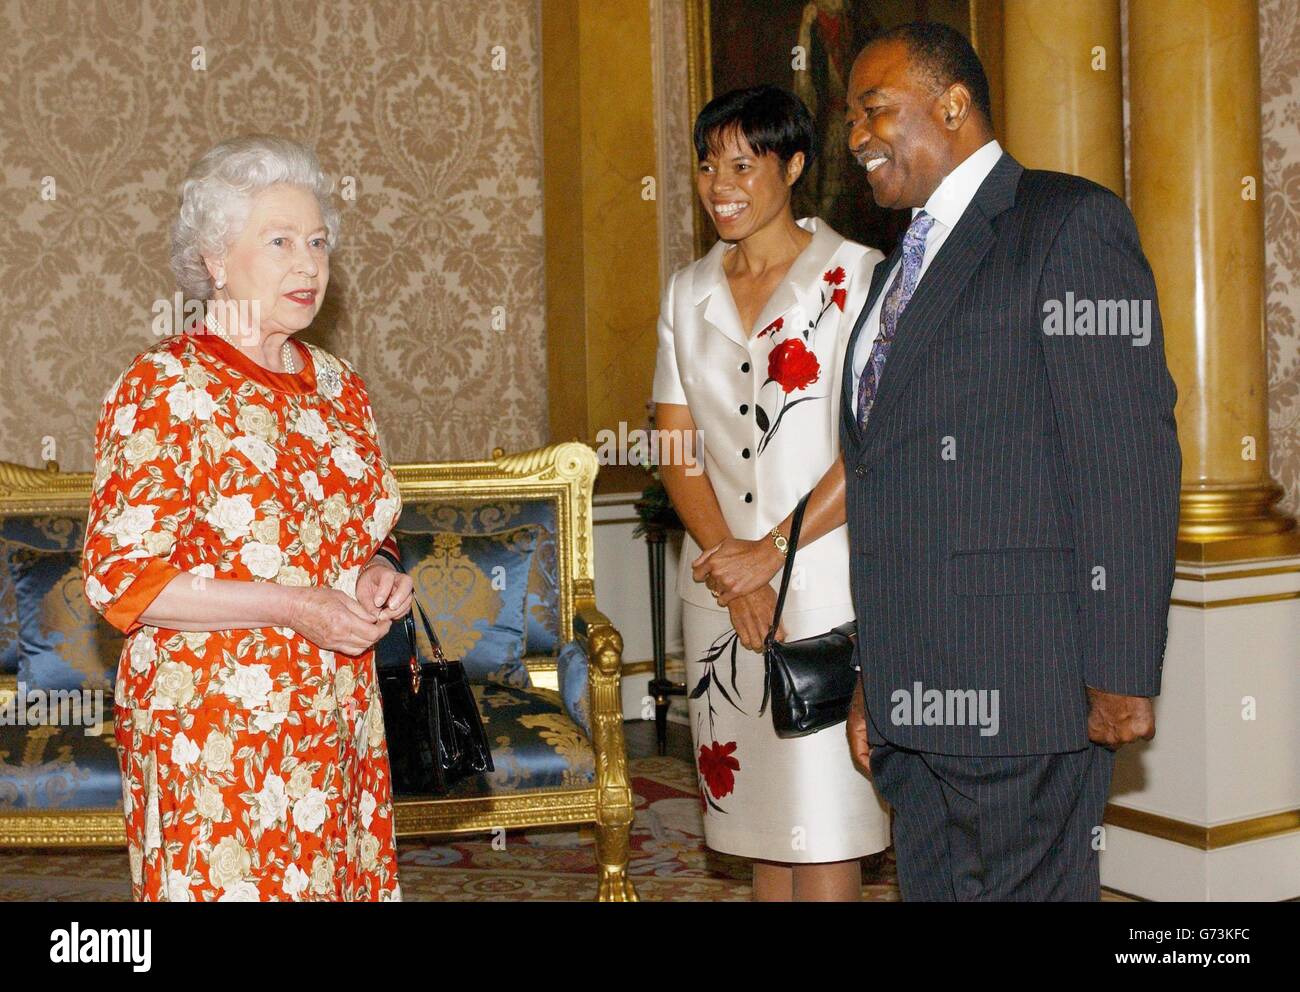 Königin Elizabeth II empfängt den Generalgouverneur von Antigua und Barbados, Sir James Carlisle, und Lady Carlisle im 1844 Room des Buckingham Palace in London. Stockfoto